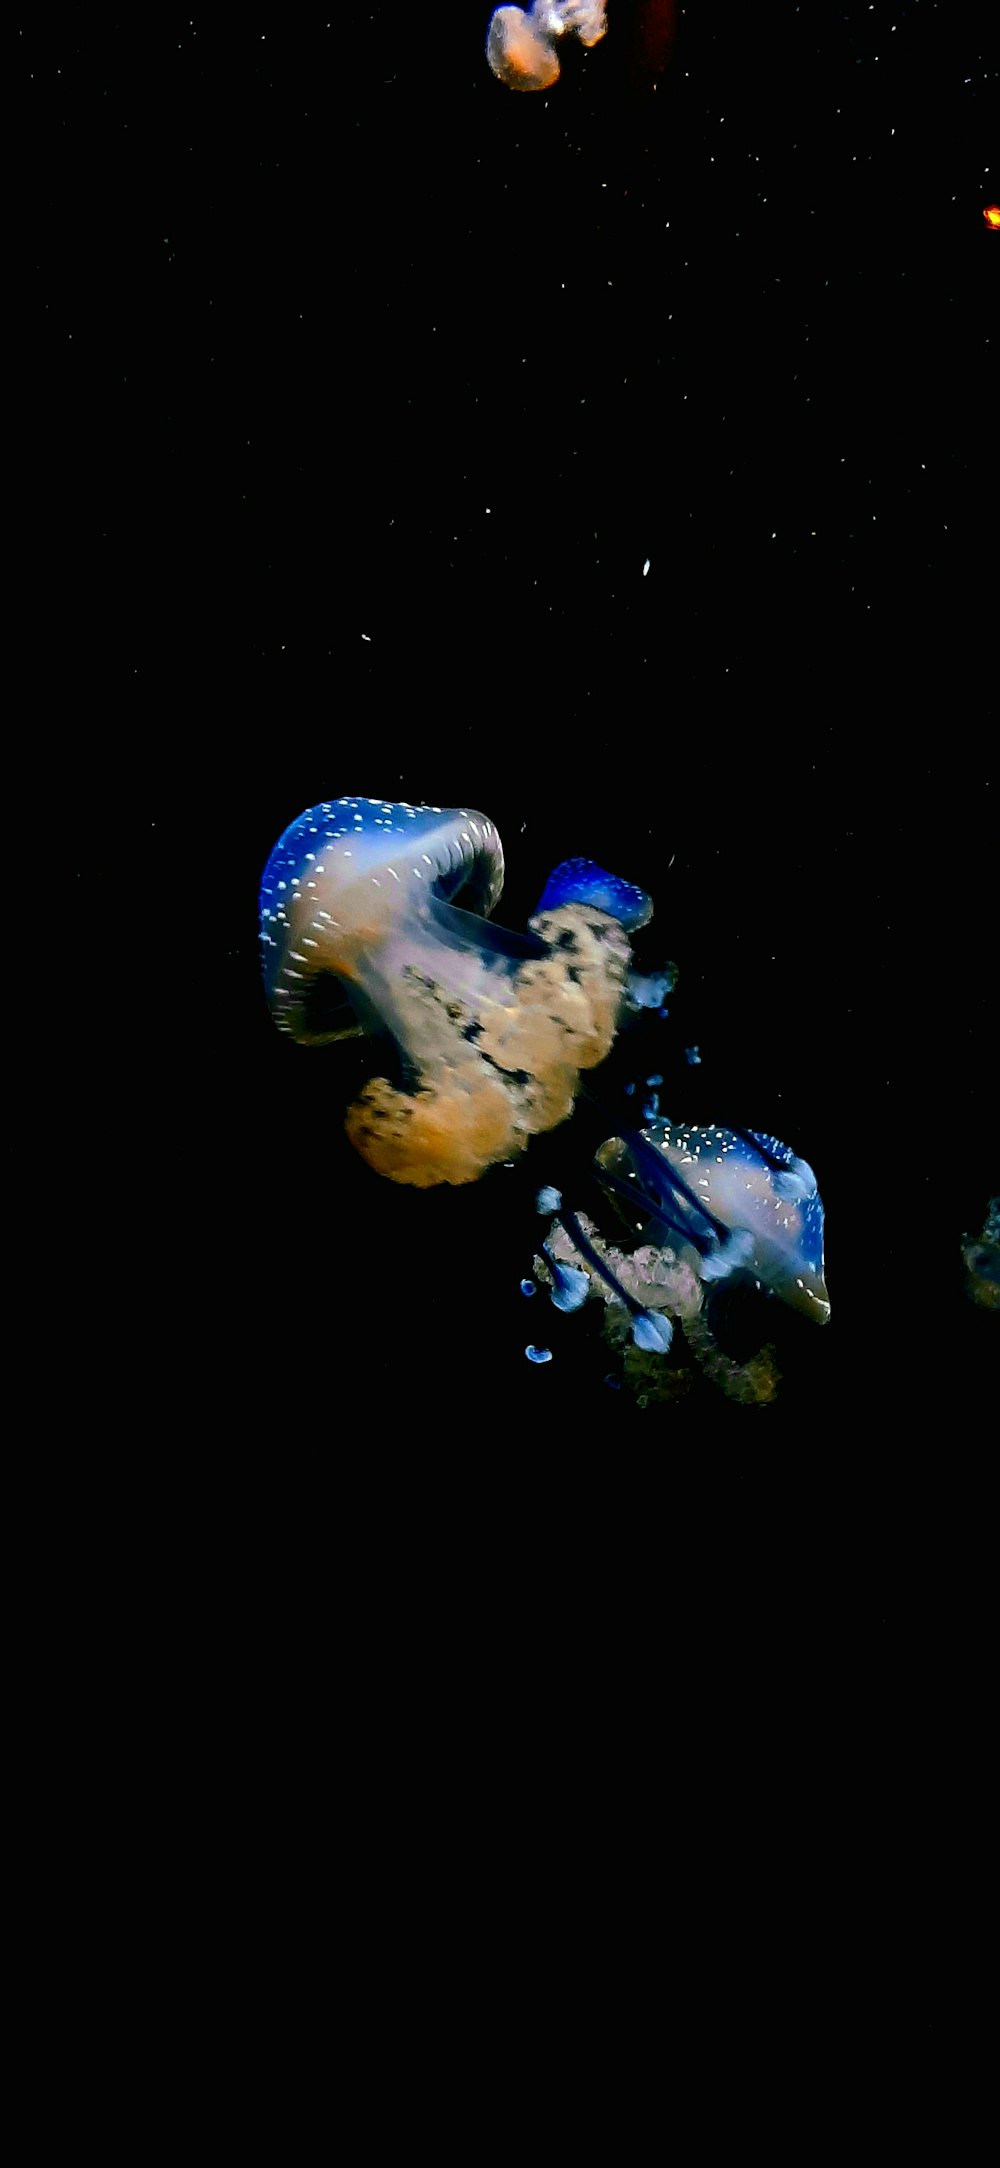 Un grupo de medusas flotando en el océano por la noche